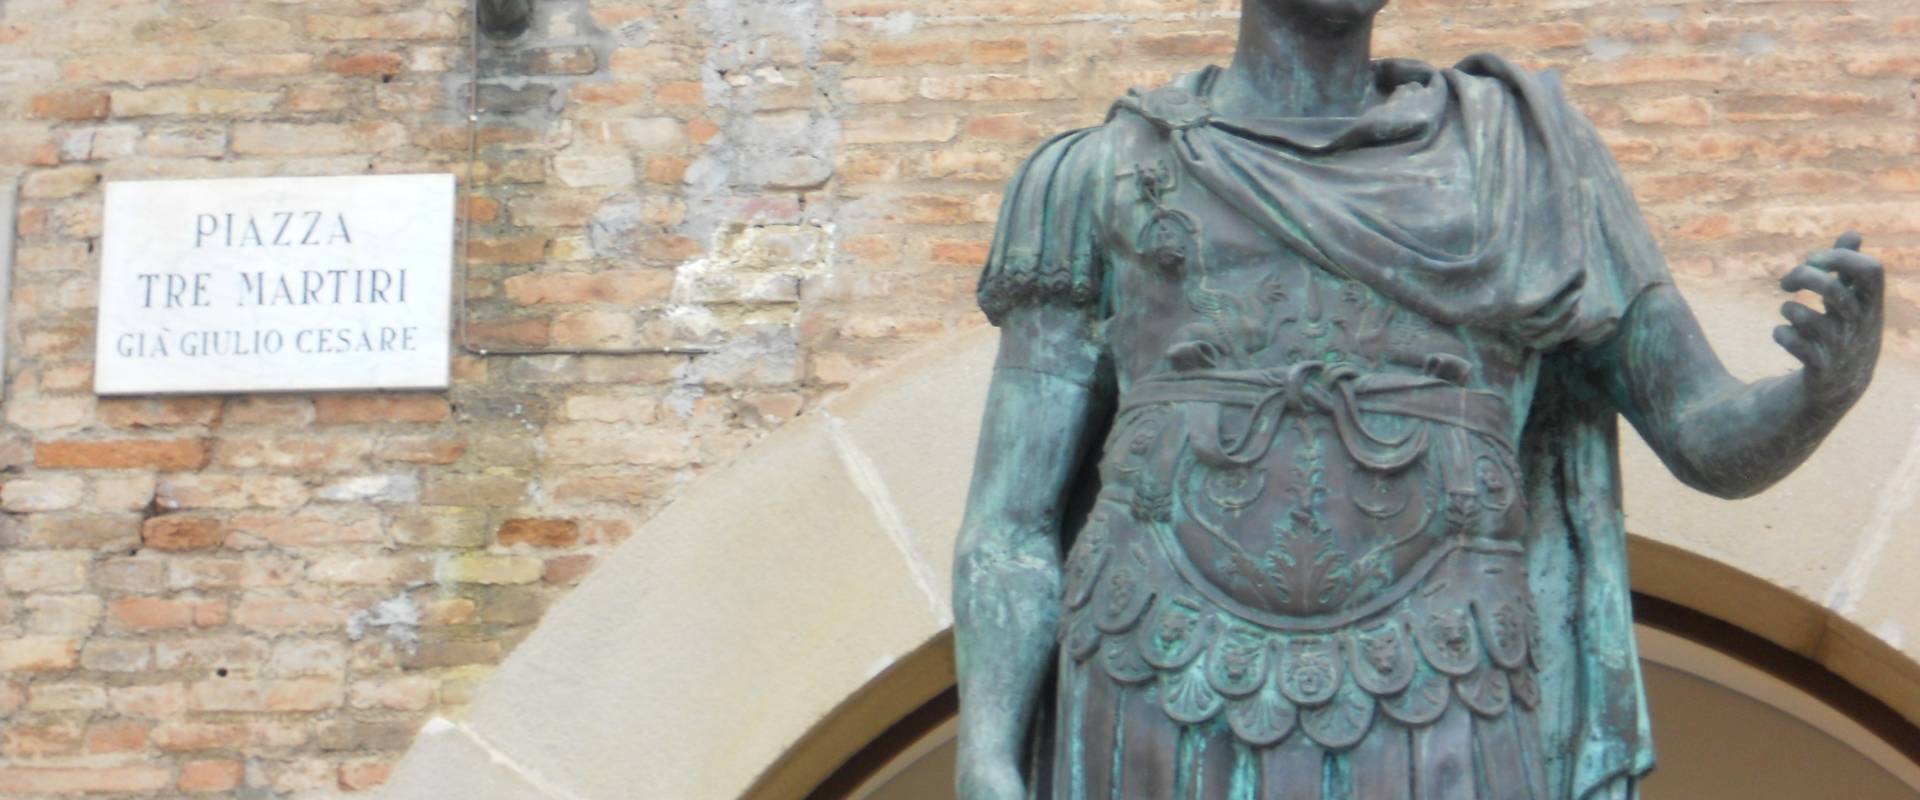 Rimini Statua di Cesare particolare photo by Paperoastro